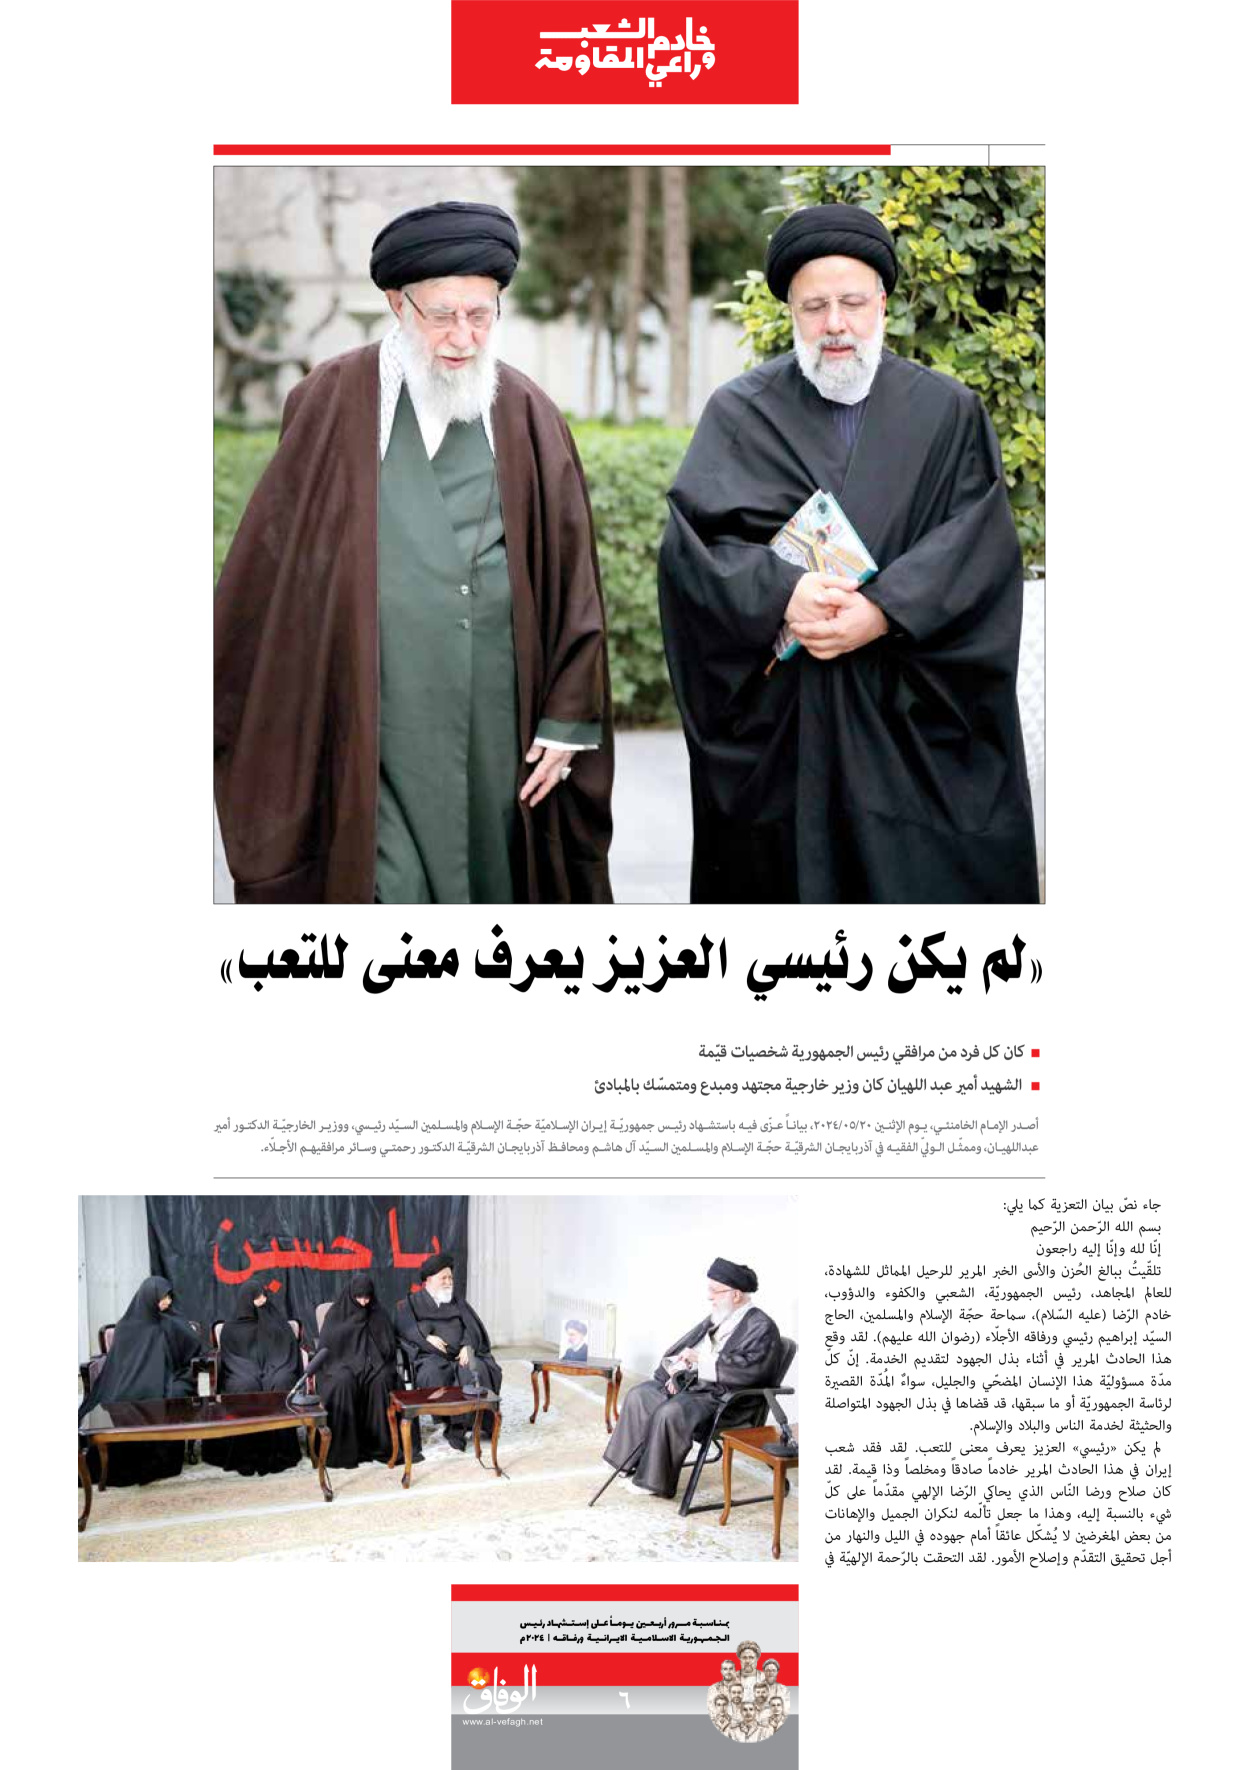 صحیفة ایران الدولیة الوفاق - ملحق ویژه نامه چهلم شهید رییسی - ٢٩ يونيو ٢٠٢٤ - الصفحة ٦